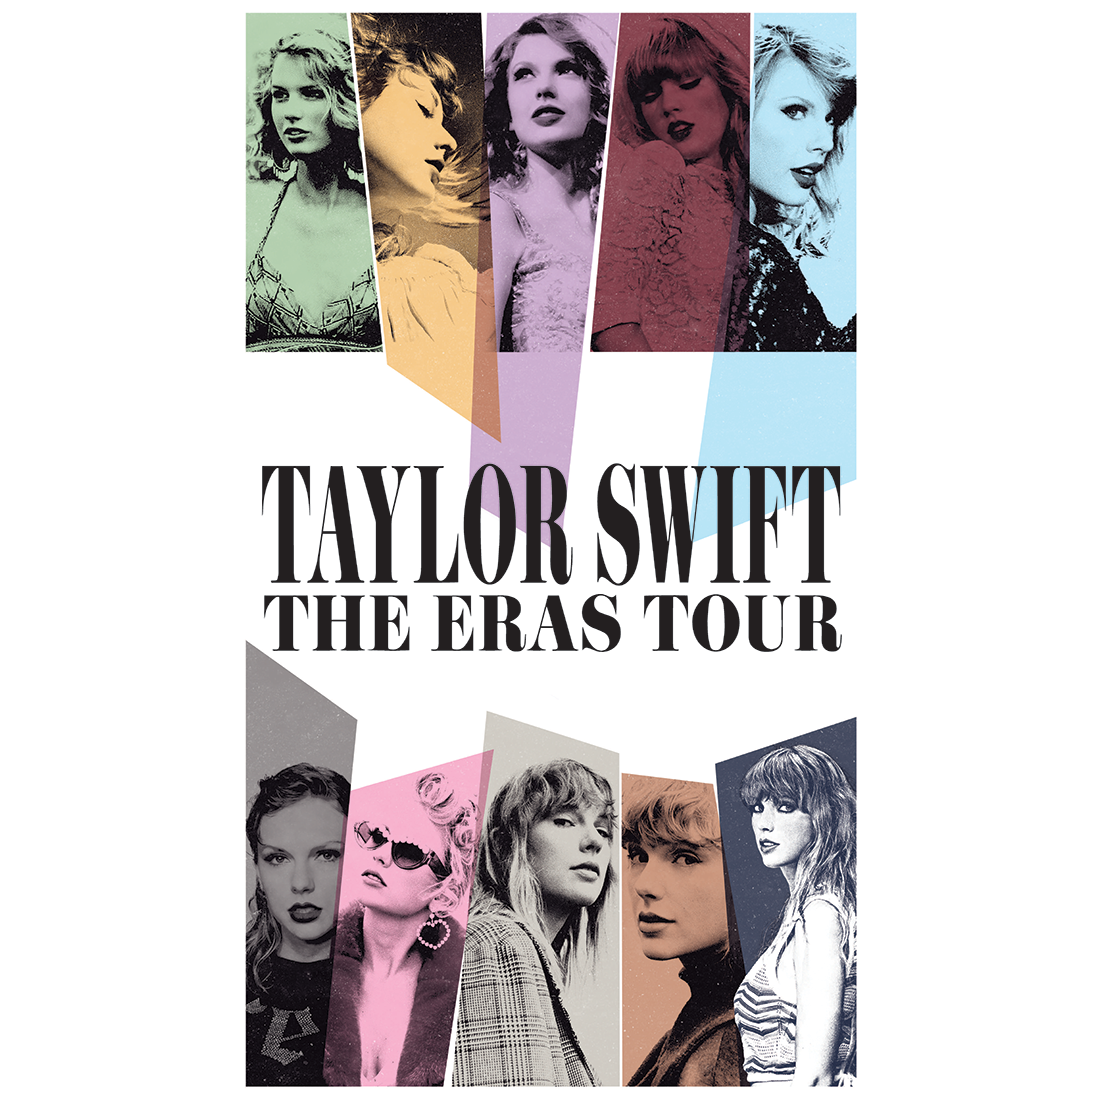 the eras tour film poster